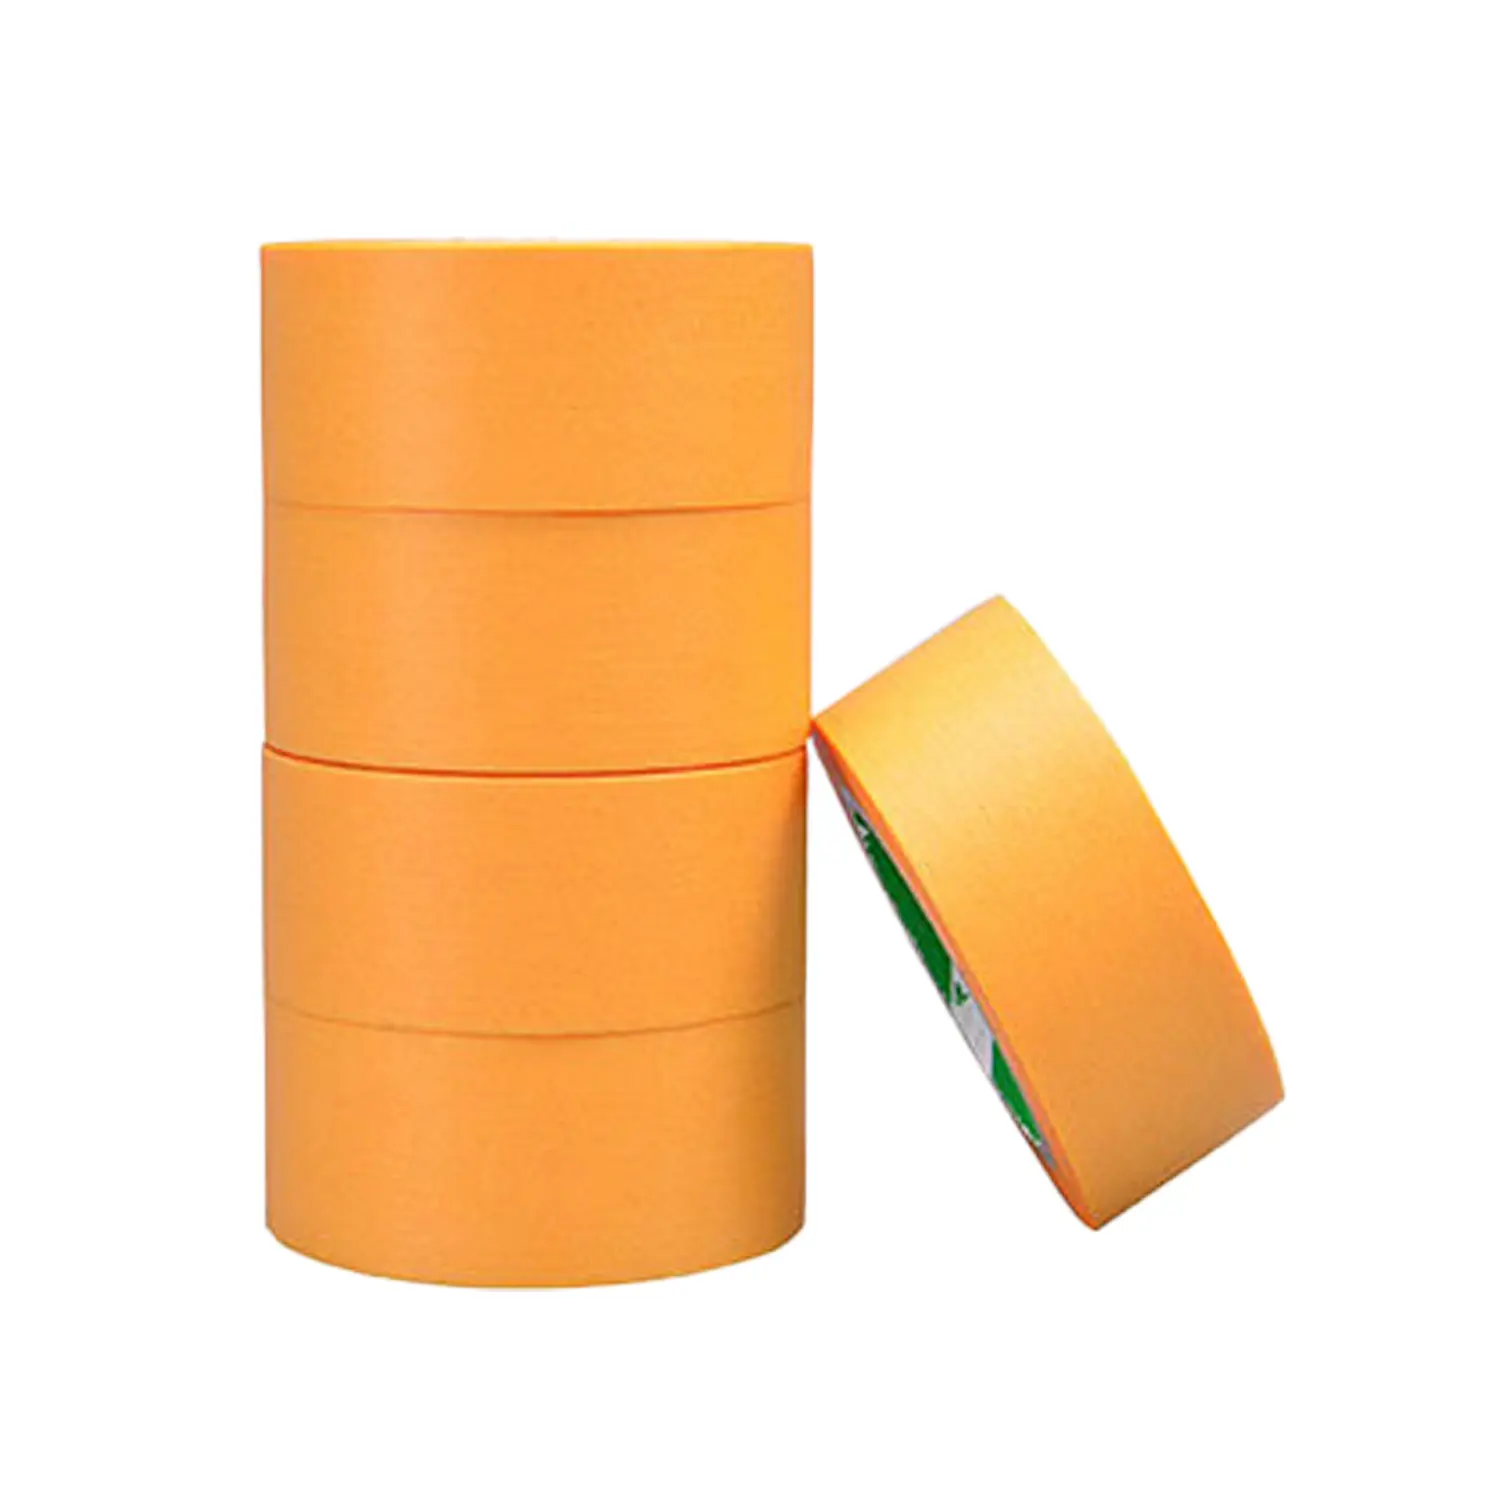 Orange Gold Masking Washi Tape For Decoration Painters Masking With Water Based Acrylic Glue Masking Washi Tape